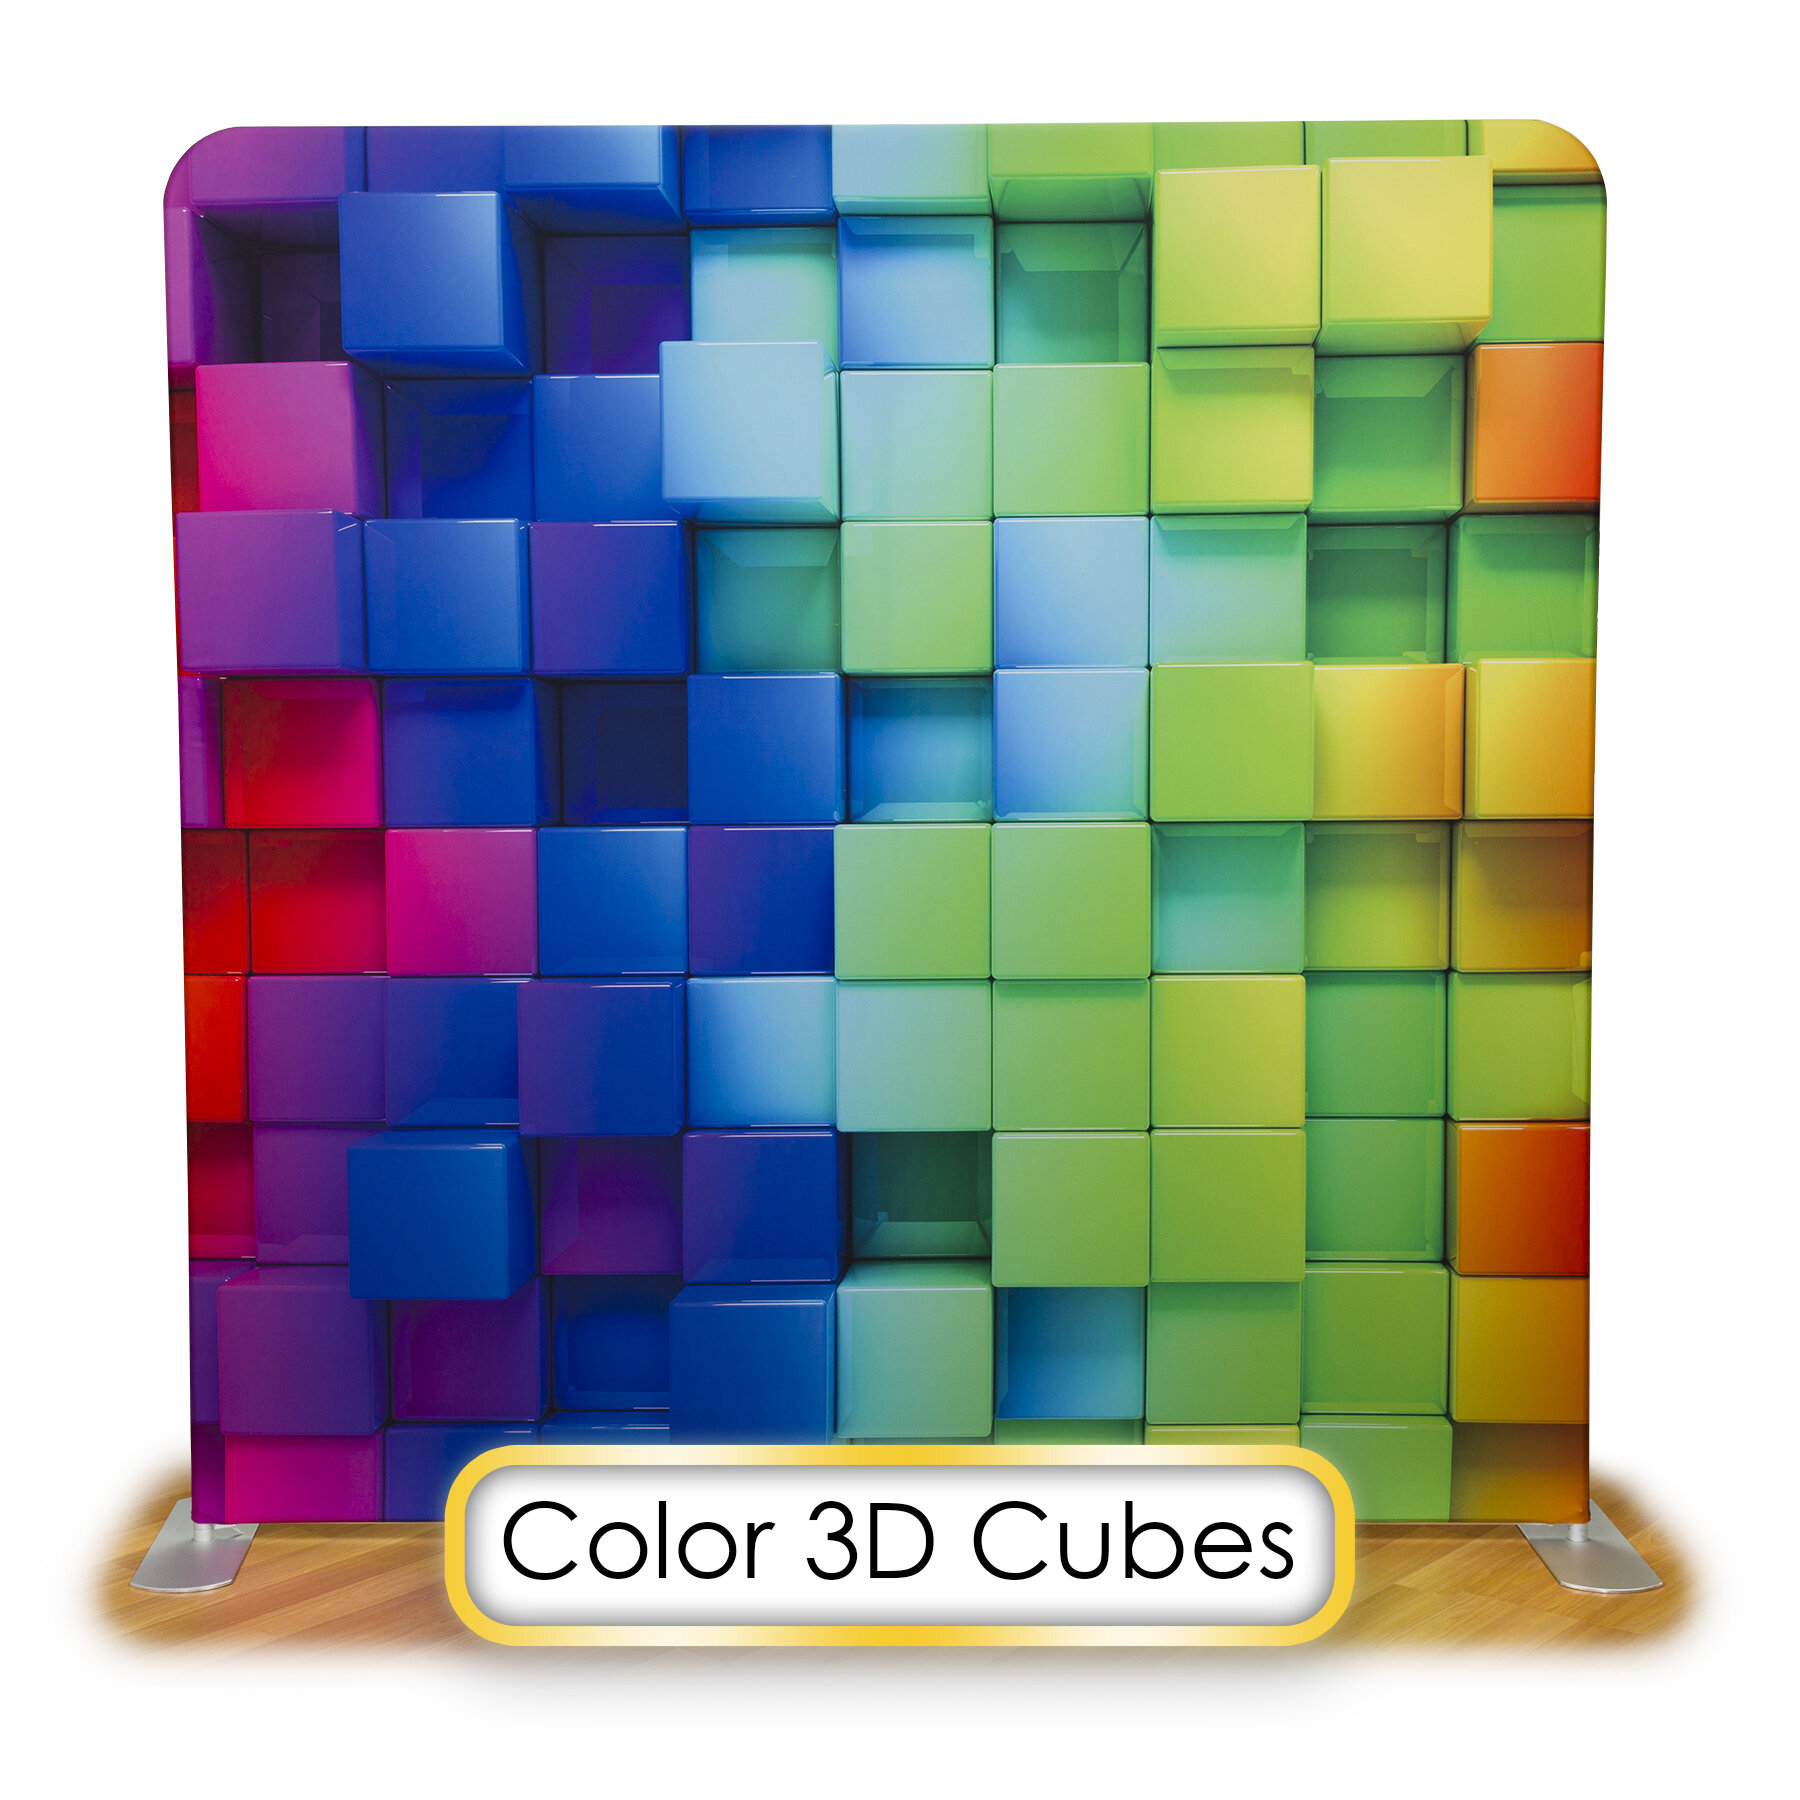 Color 3D Cubes.jpg